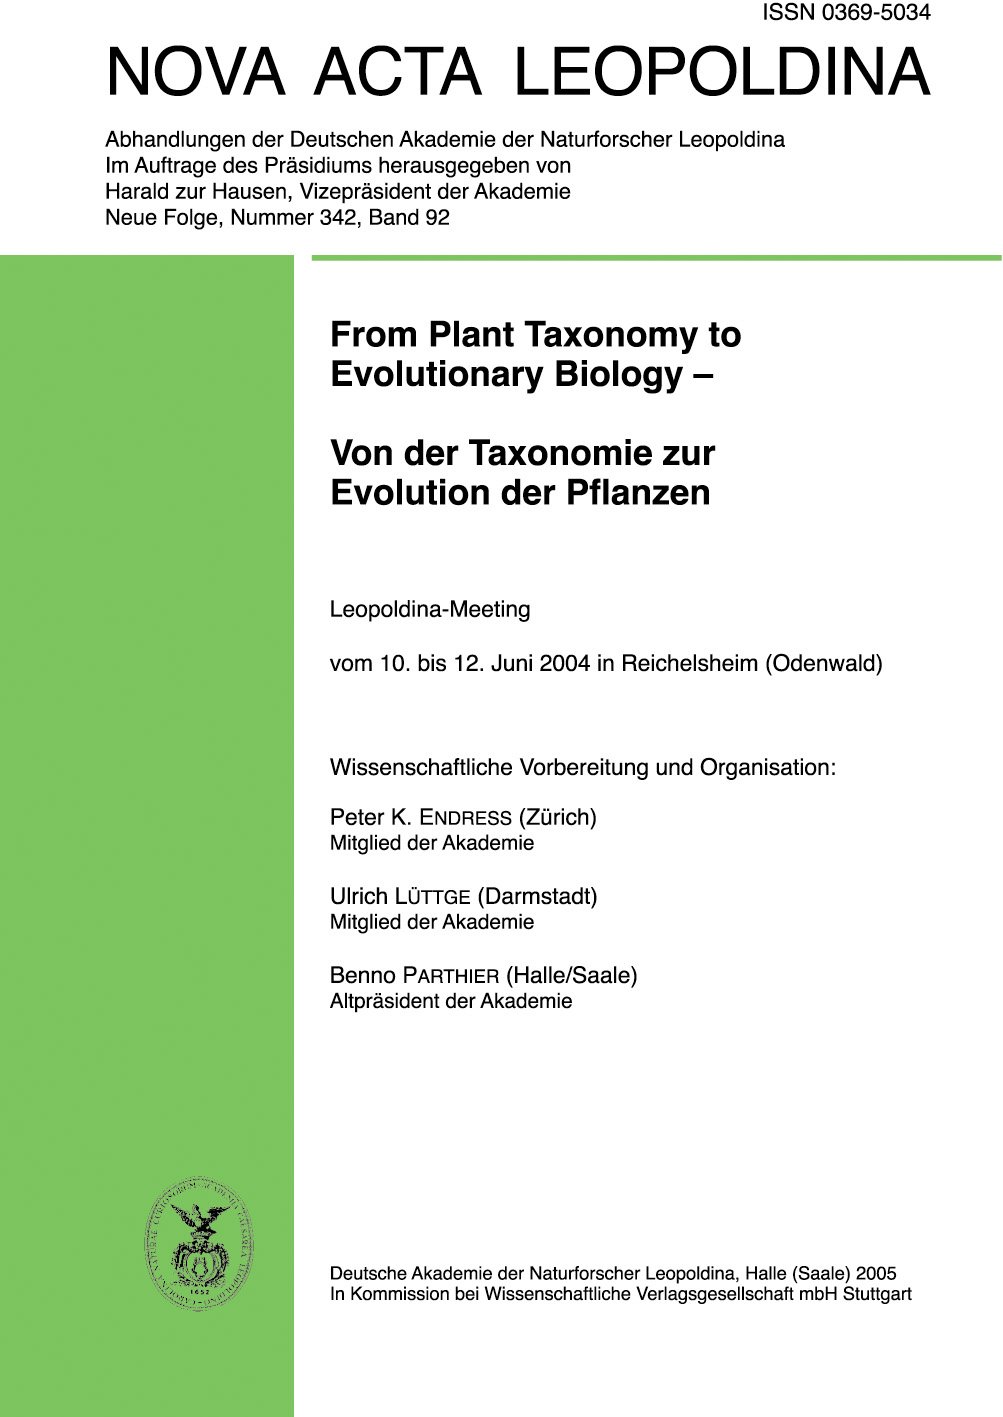 From Plant Taxonomy to Evolutionary Biology - Von der Taxonomie zur Evolution der Pflanzen